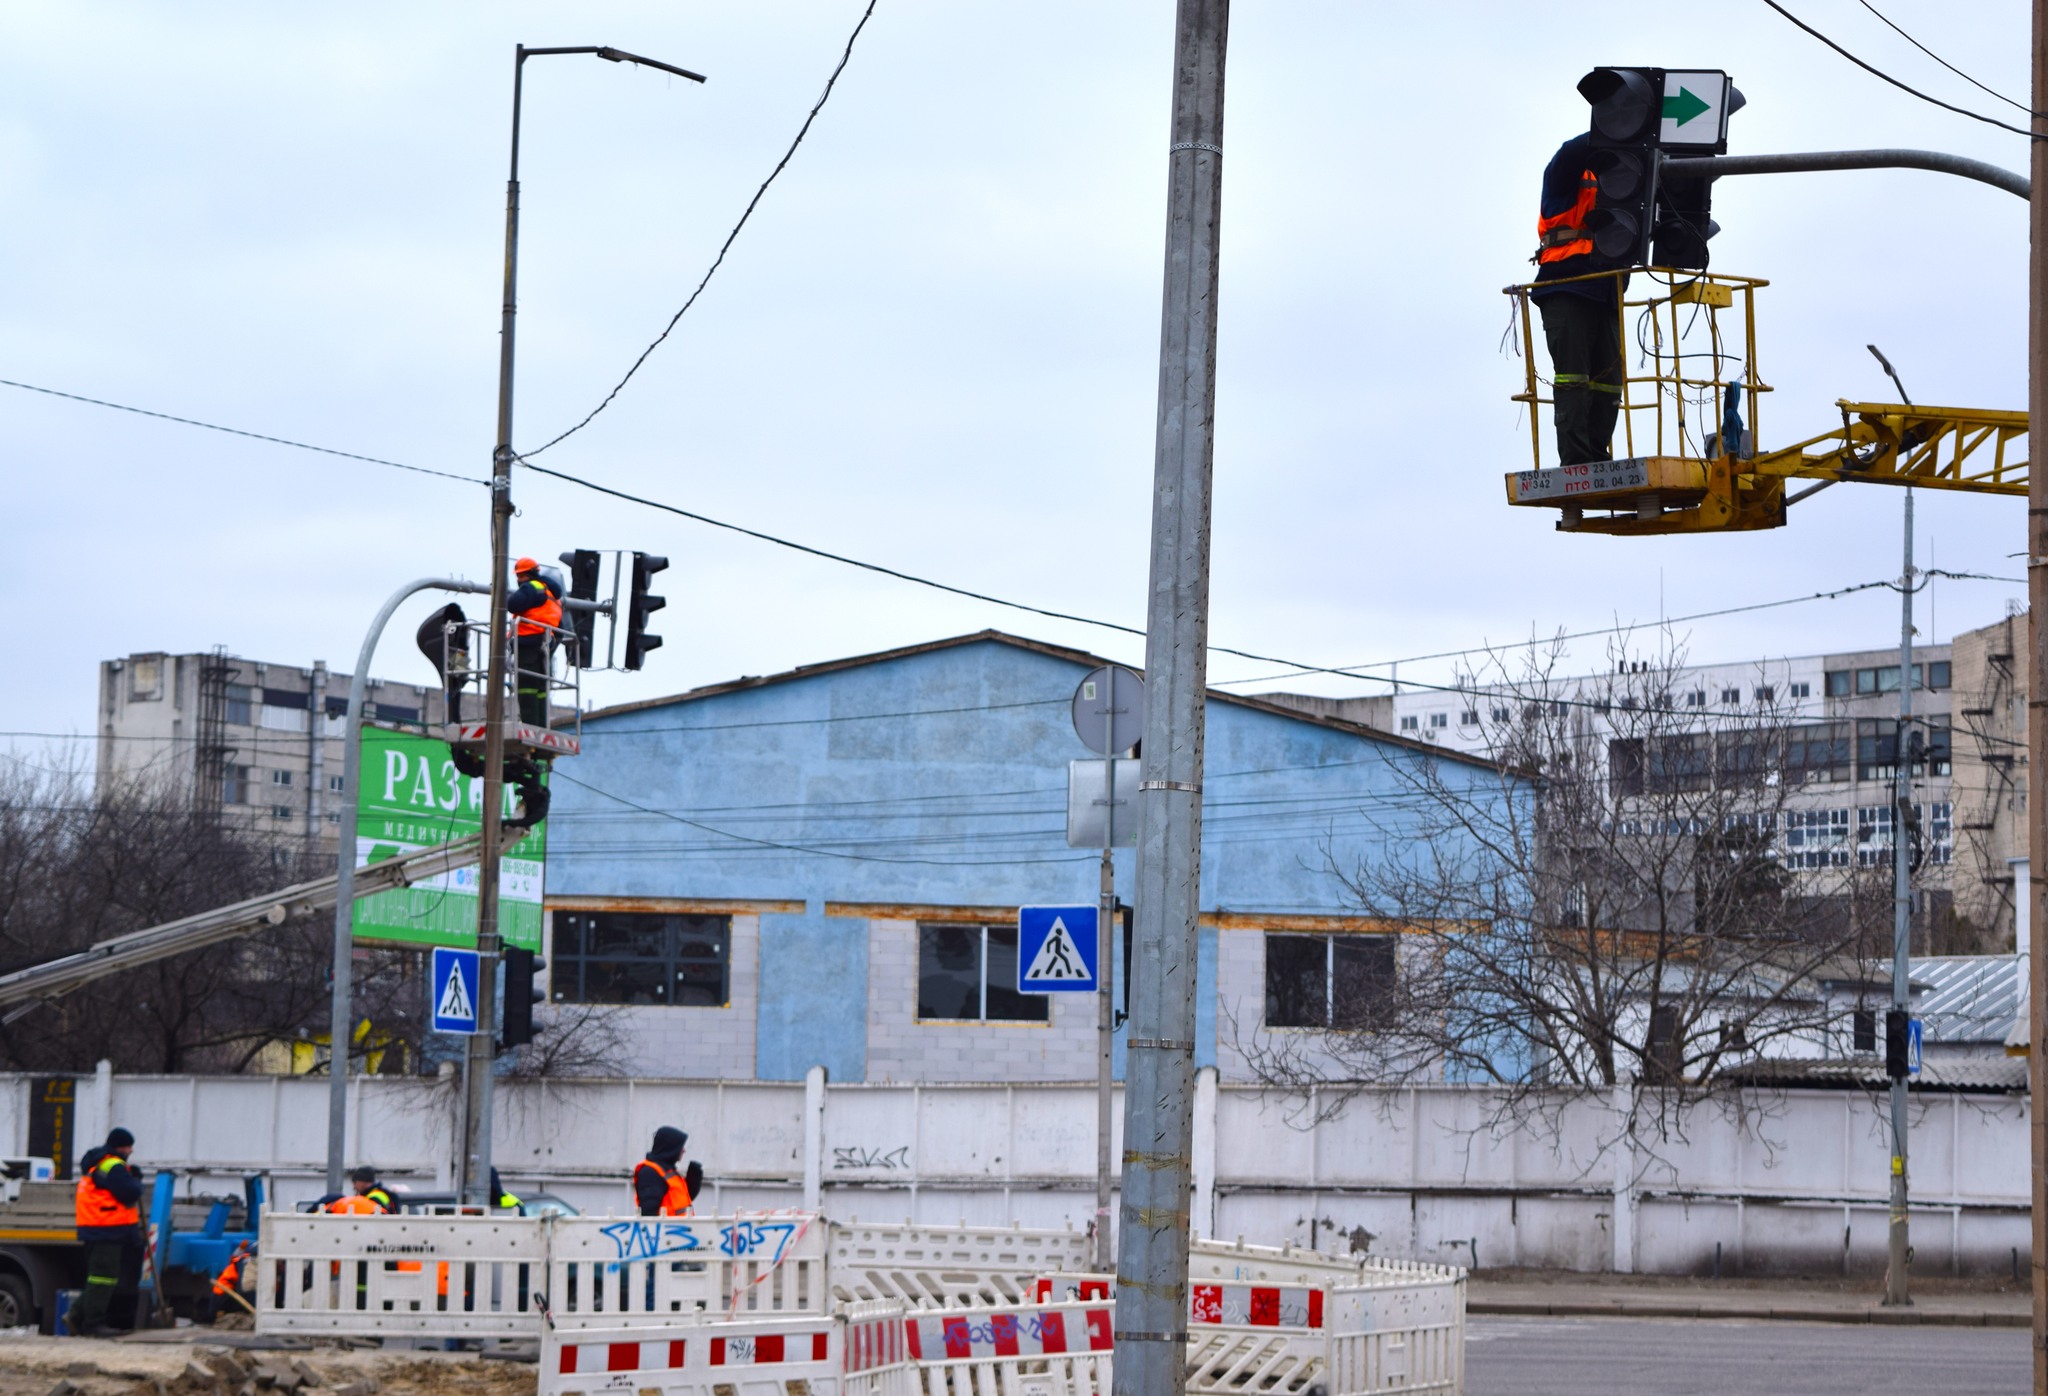 7 березня, в Оболонському районі Києва, на перетині вулиці Скляренка та провулку Балтійського розпочали відновлення світлофору